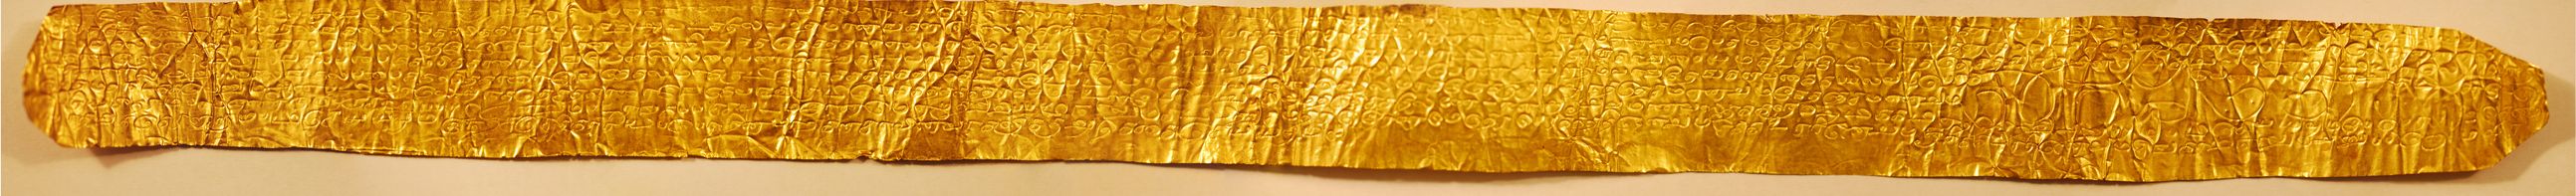 Raghunatha's Gold Foil